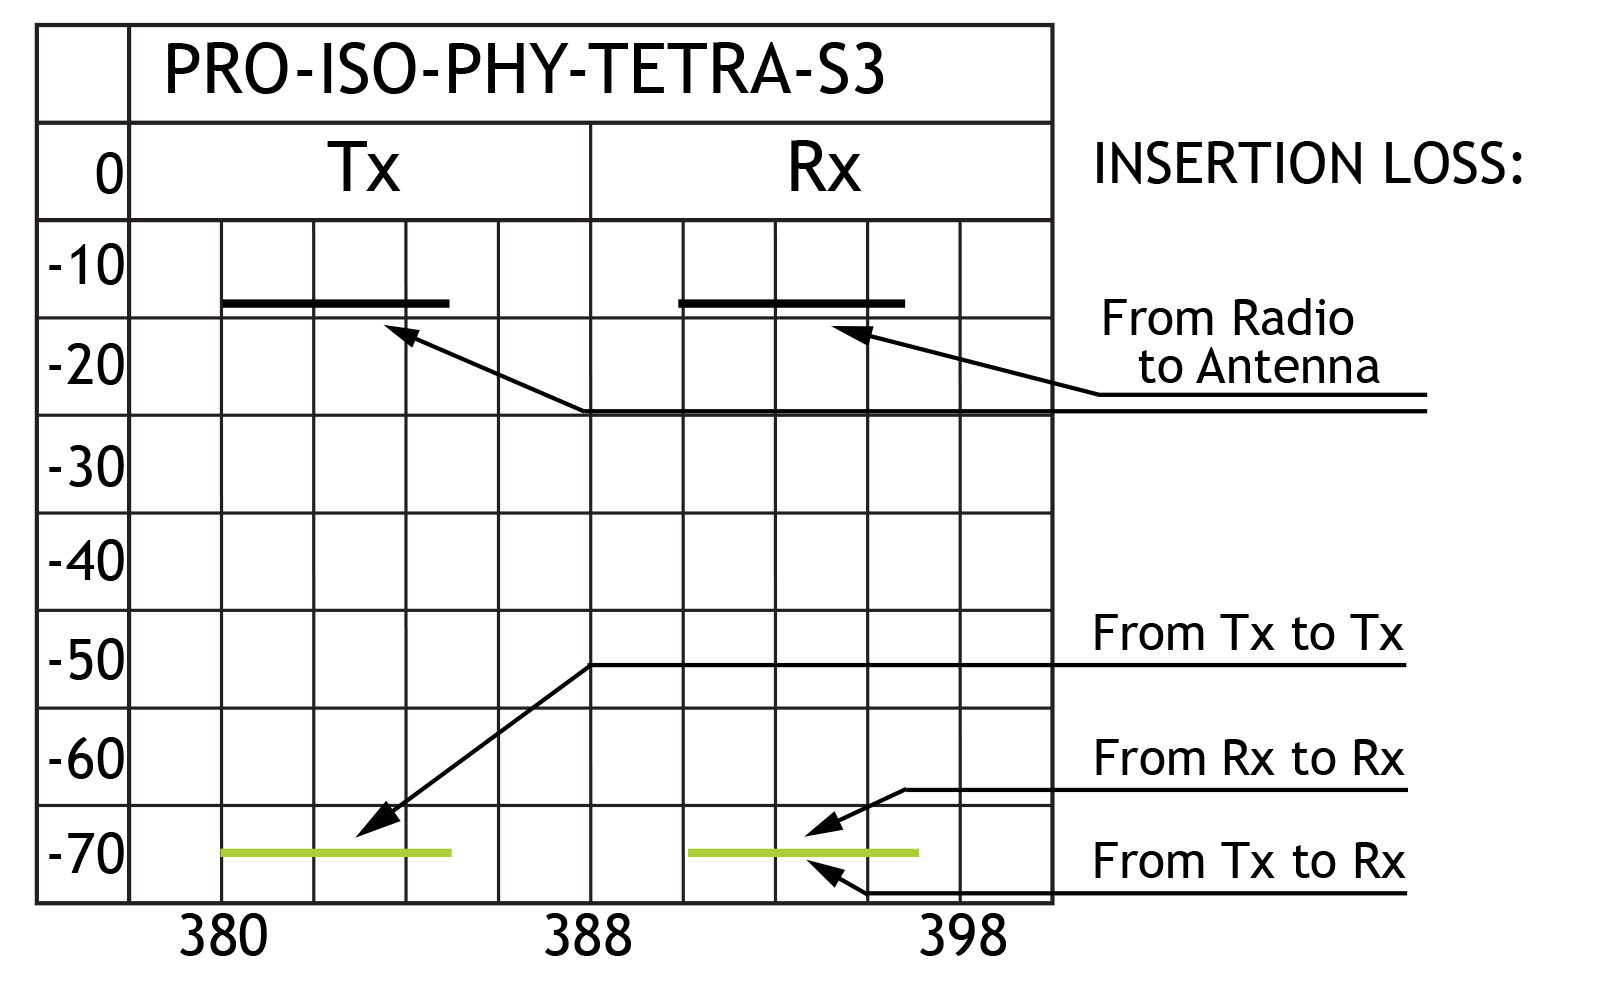 PRO ISO PHY TETRA S3 insloss GB